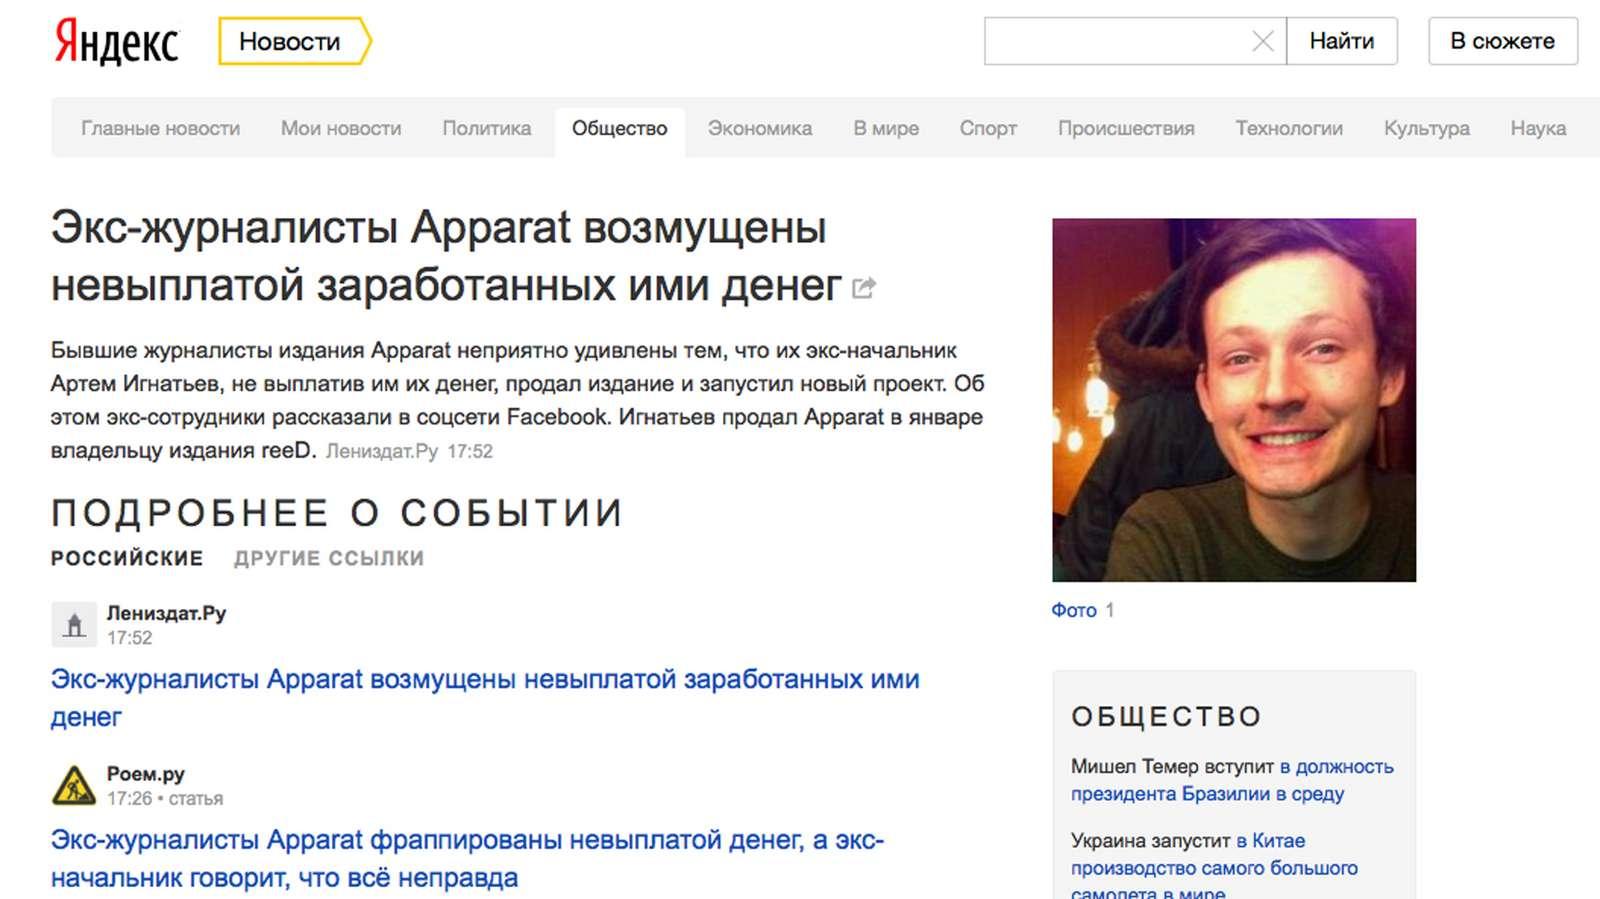 Https m dzen ru news rubric election. Новости в Яндексе новости в Яндексе.